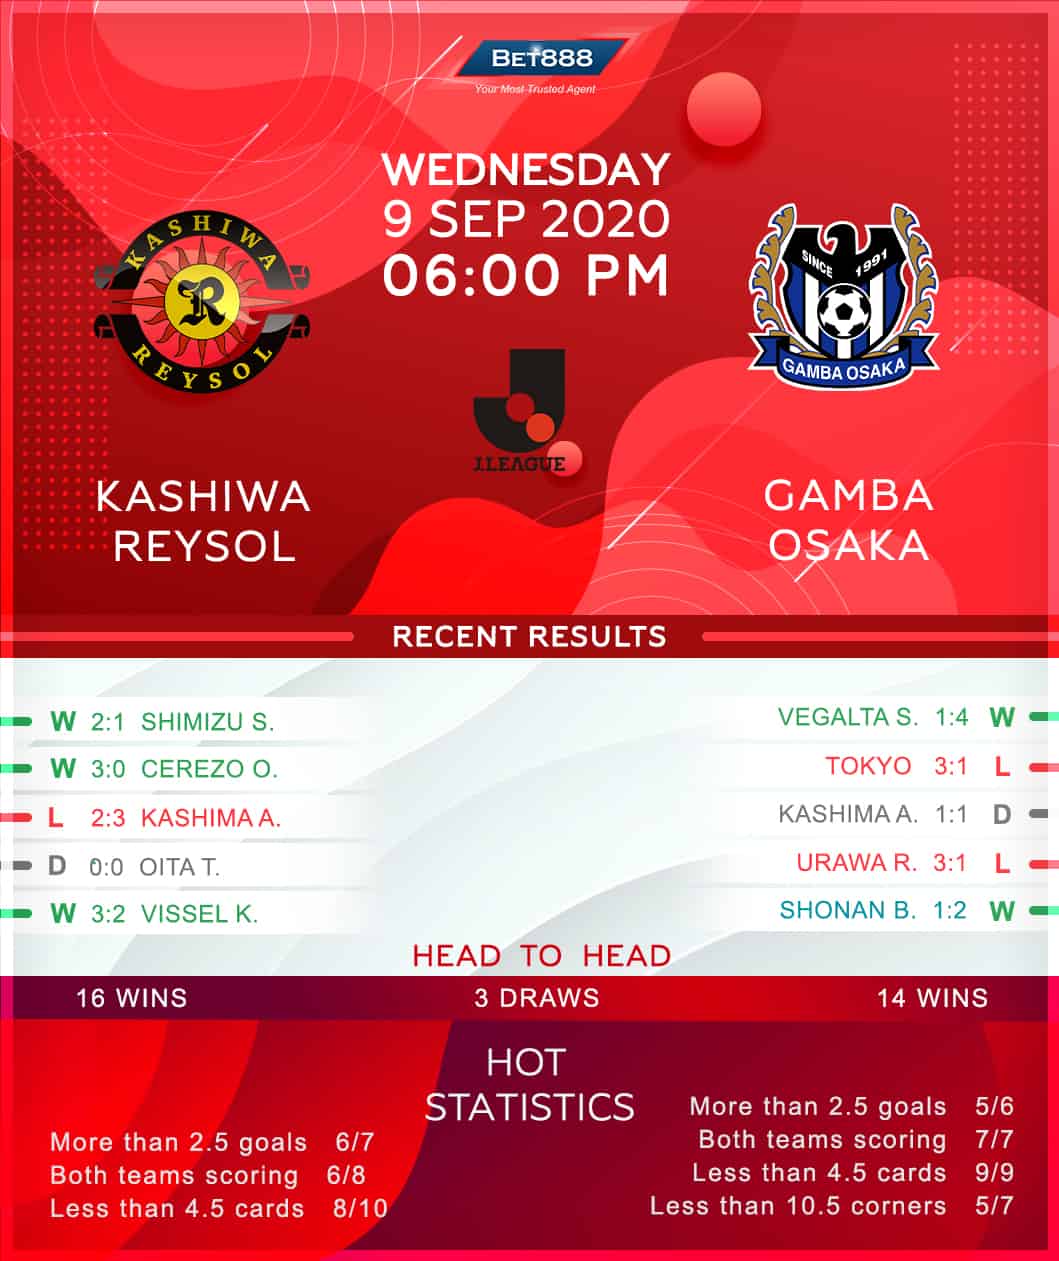 Kashiwa Reysol vs Gamba Osaka 09/09/20